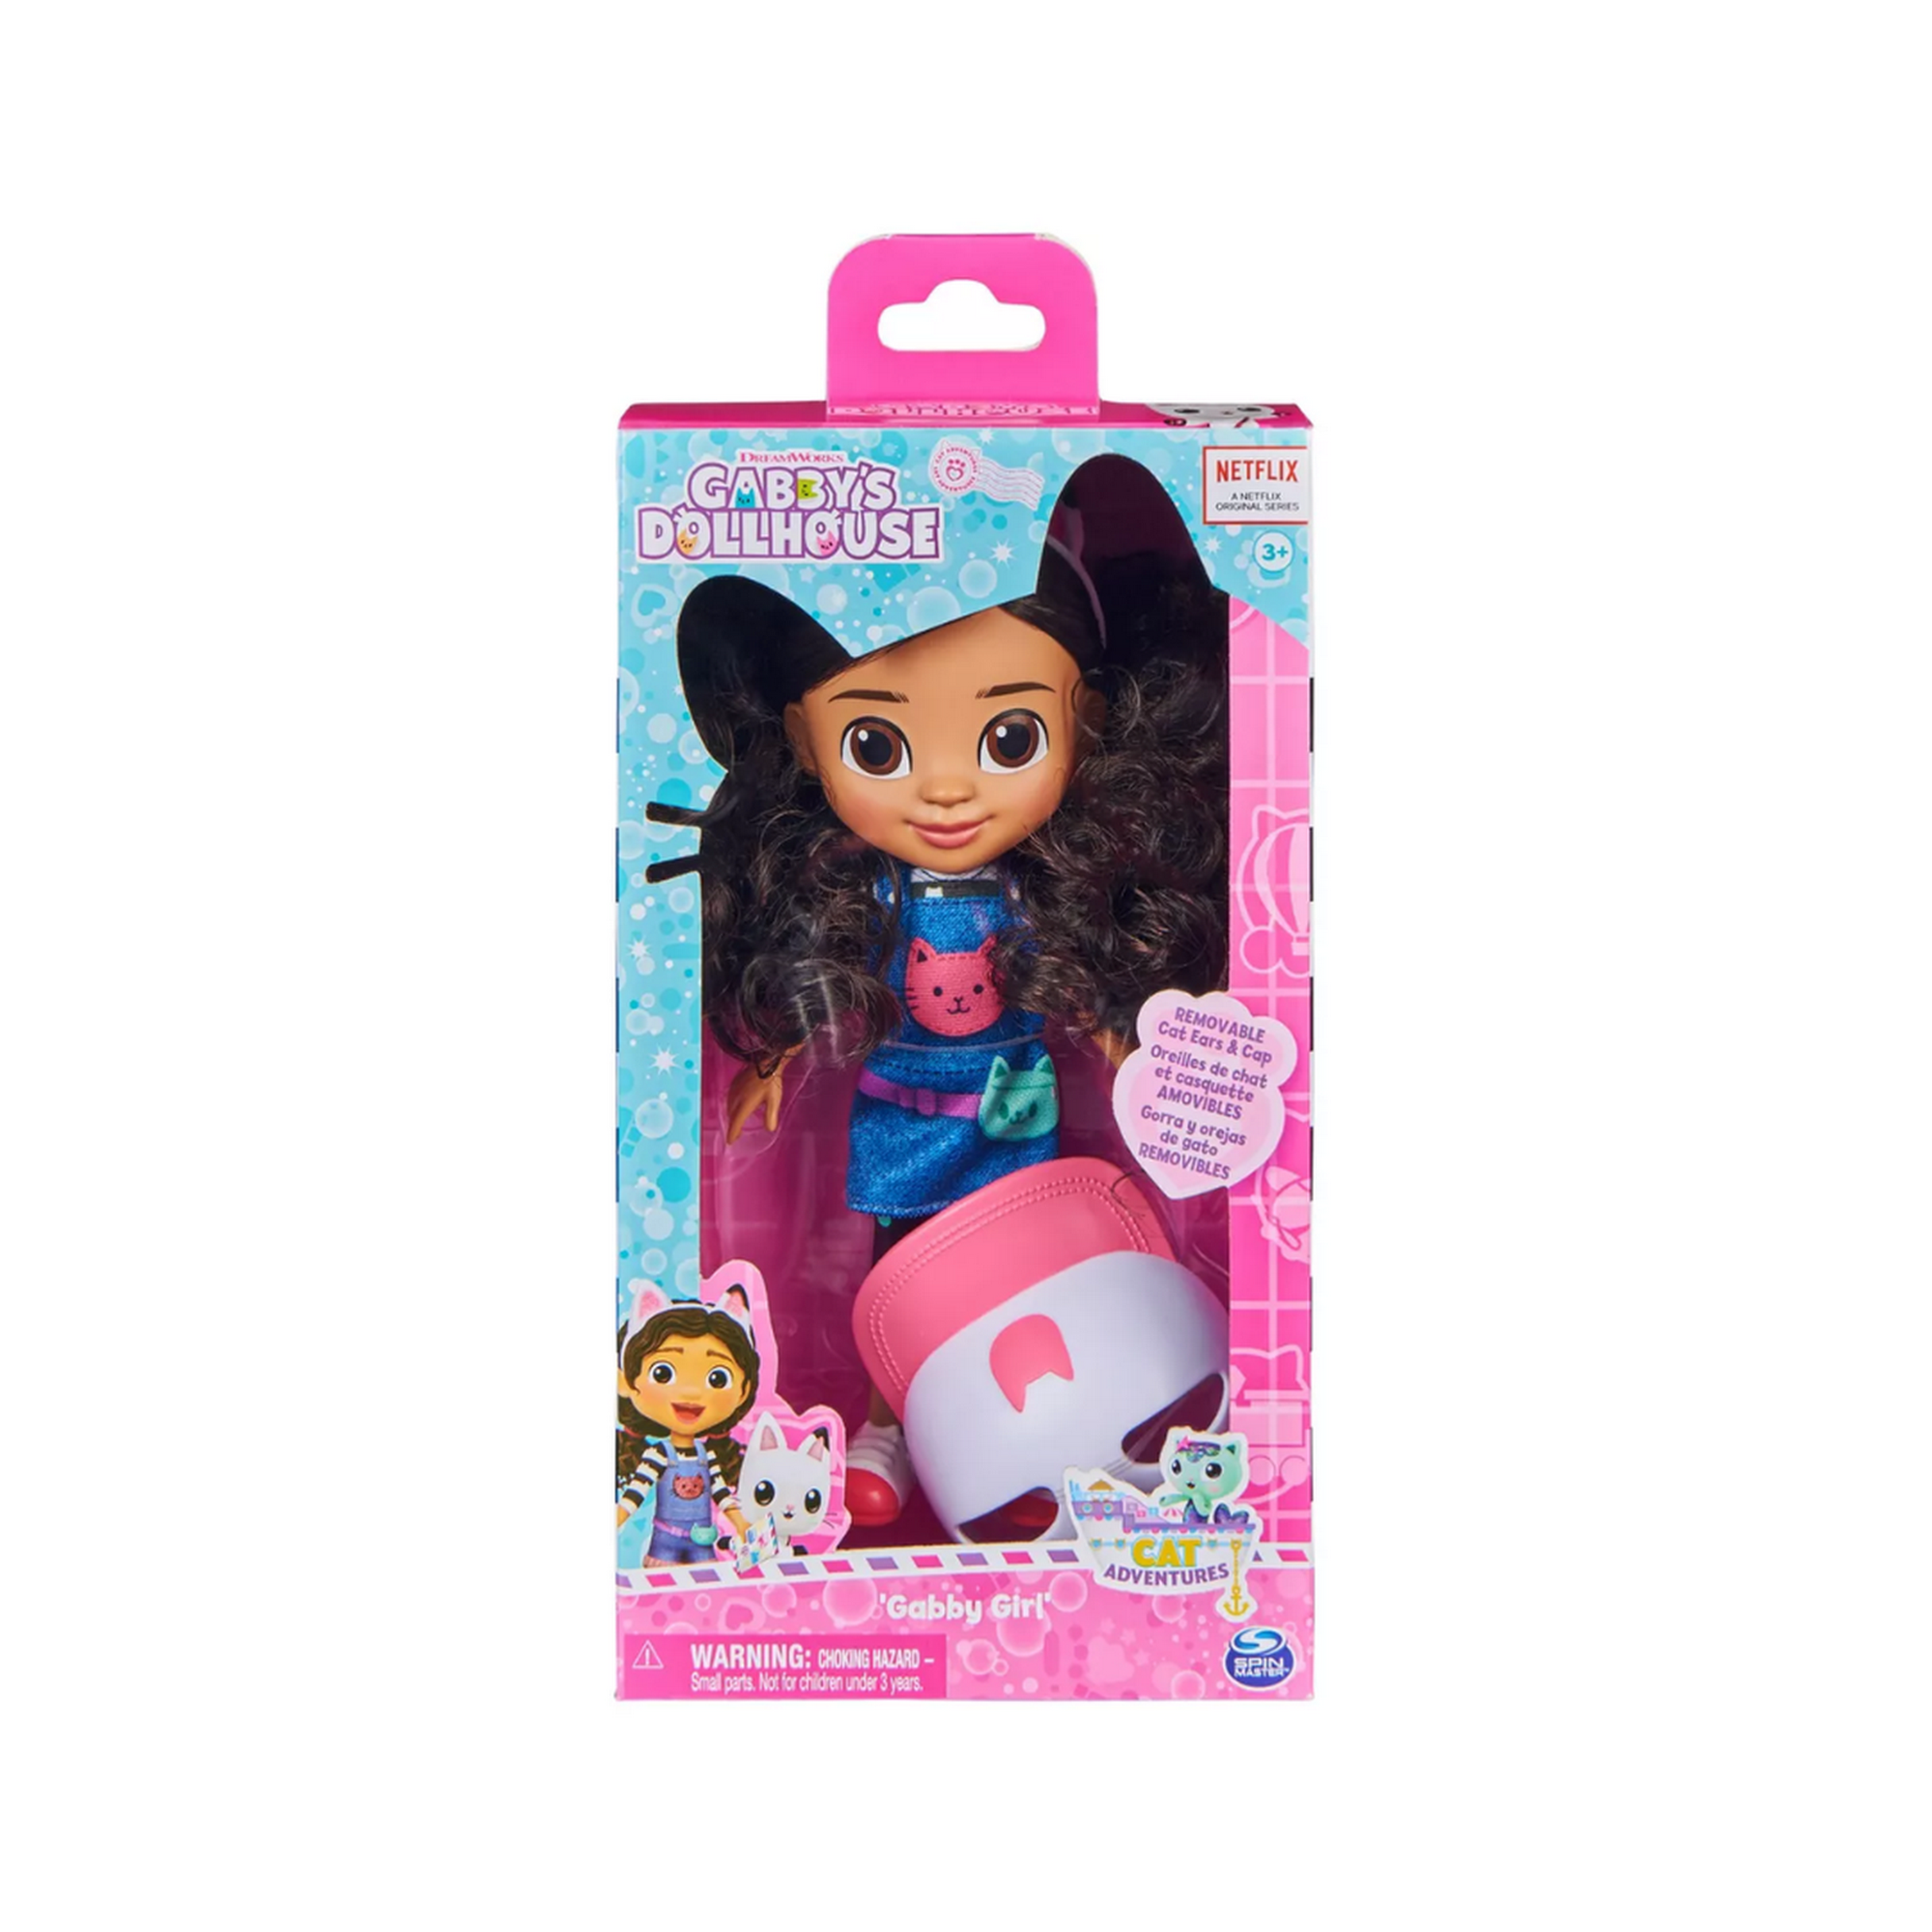  Gabby's Dollhouse, Juego de figuras temáticas de viaje con una  muñeca Gabby, 5 figuras de juguete de gato, juguetes sorpresa y accesorios  para casa de muñecas, juguetes para niños para niñas